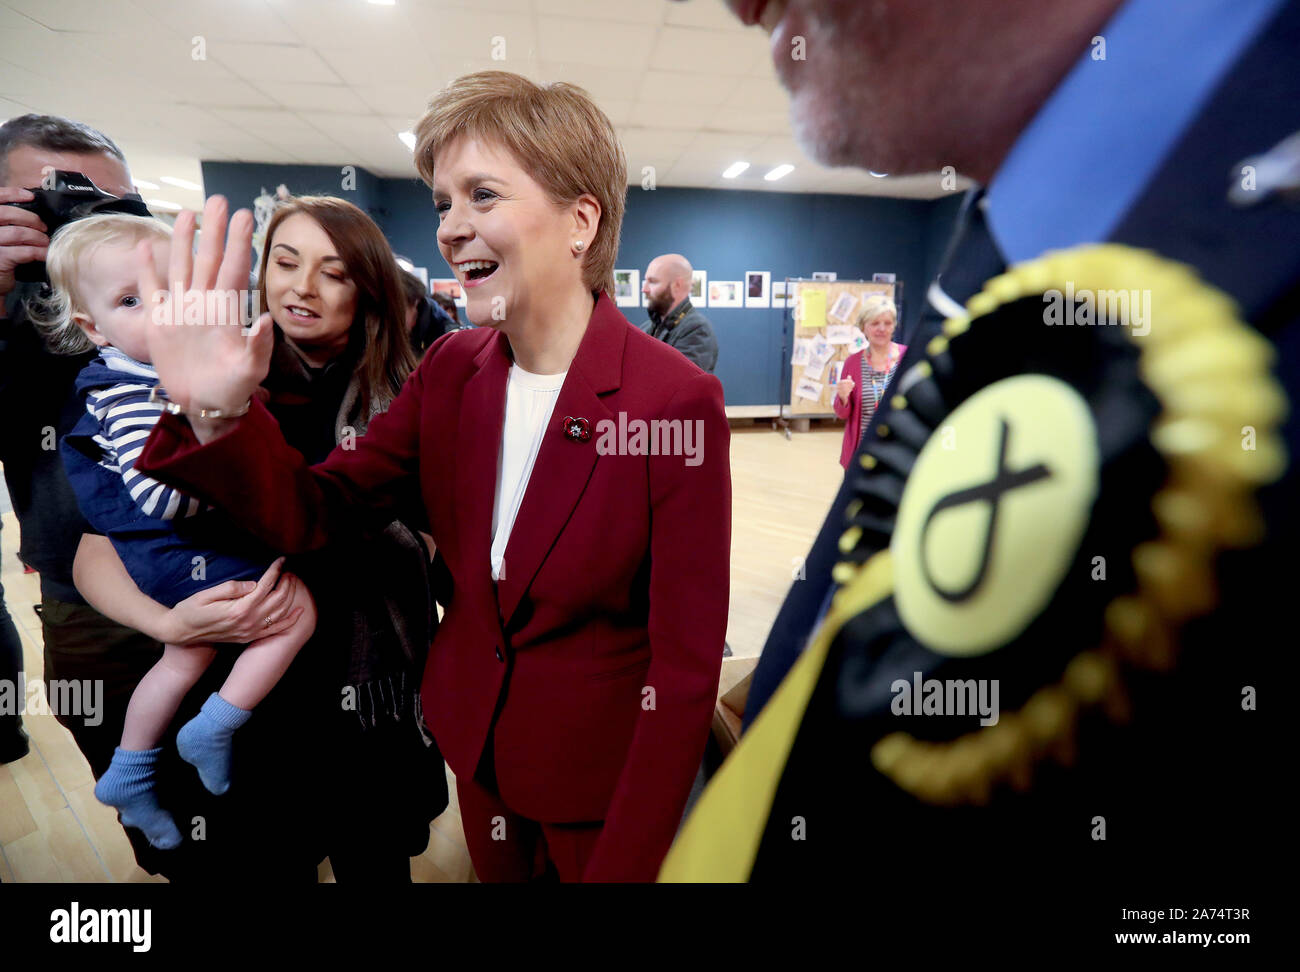 SNP-Chef Nicola Sturgeon verbindet Alyn Smith, Kandidaten der SNP für Stirling, besuchen Sie die Hergestellt in Stirling Store und Kreative Hub, während die allgemeine Wahl Kampagne Spur in der Stadt. Stockfoto